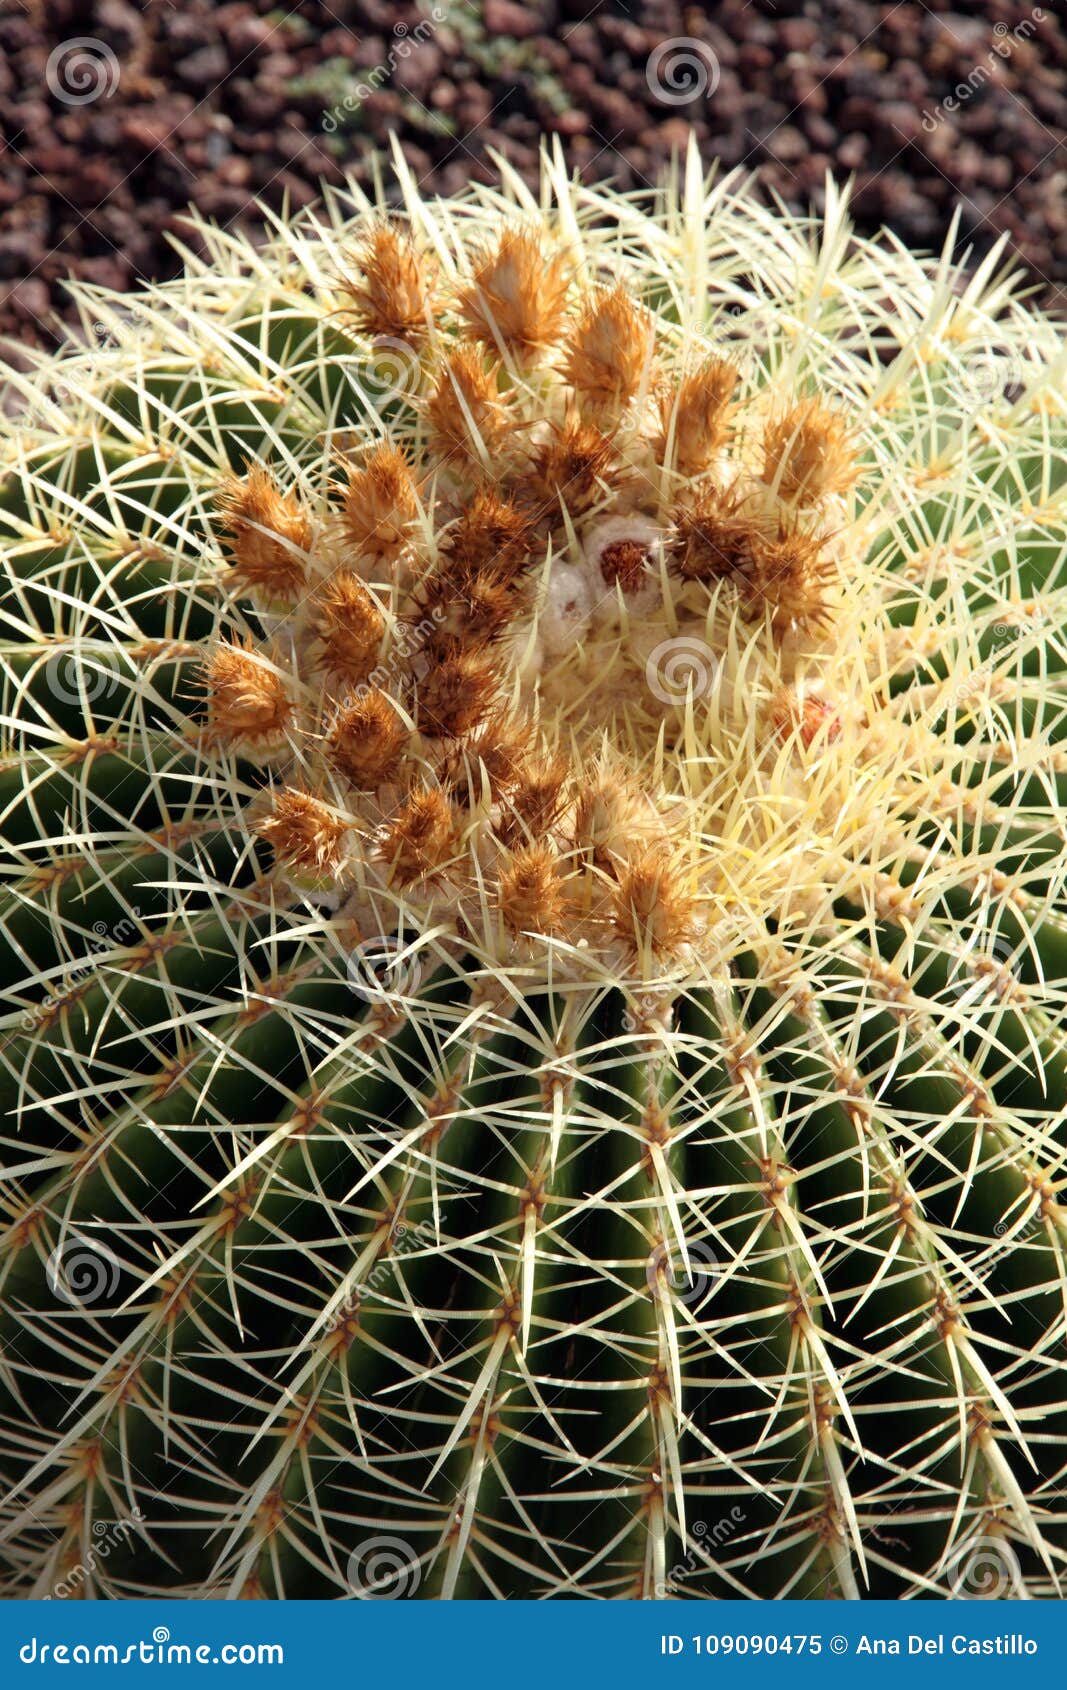 echinocactus grusonii cactus